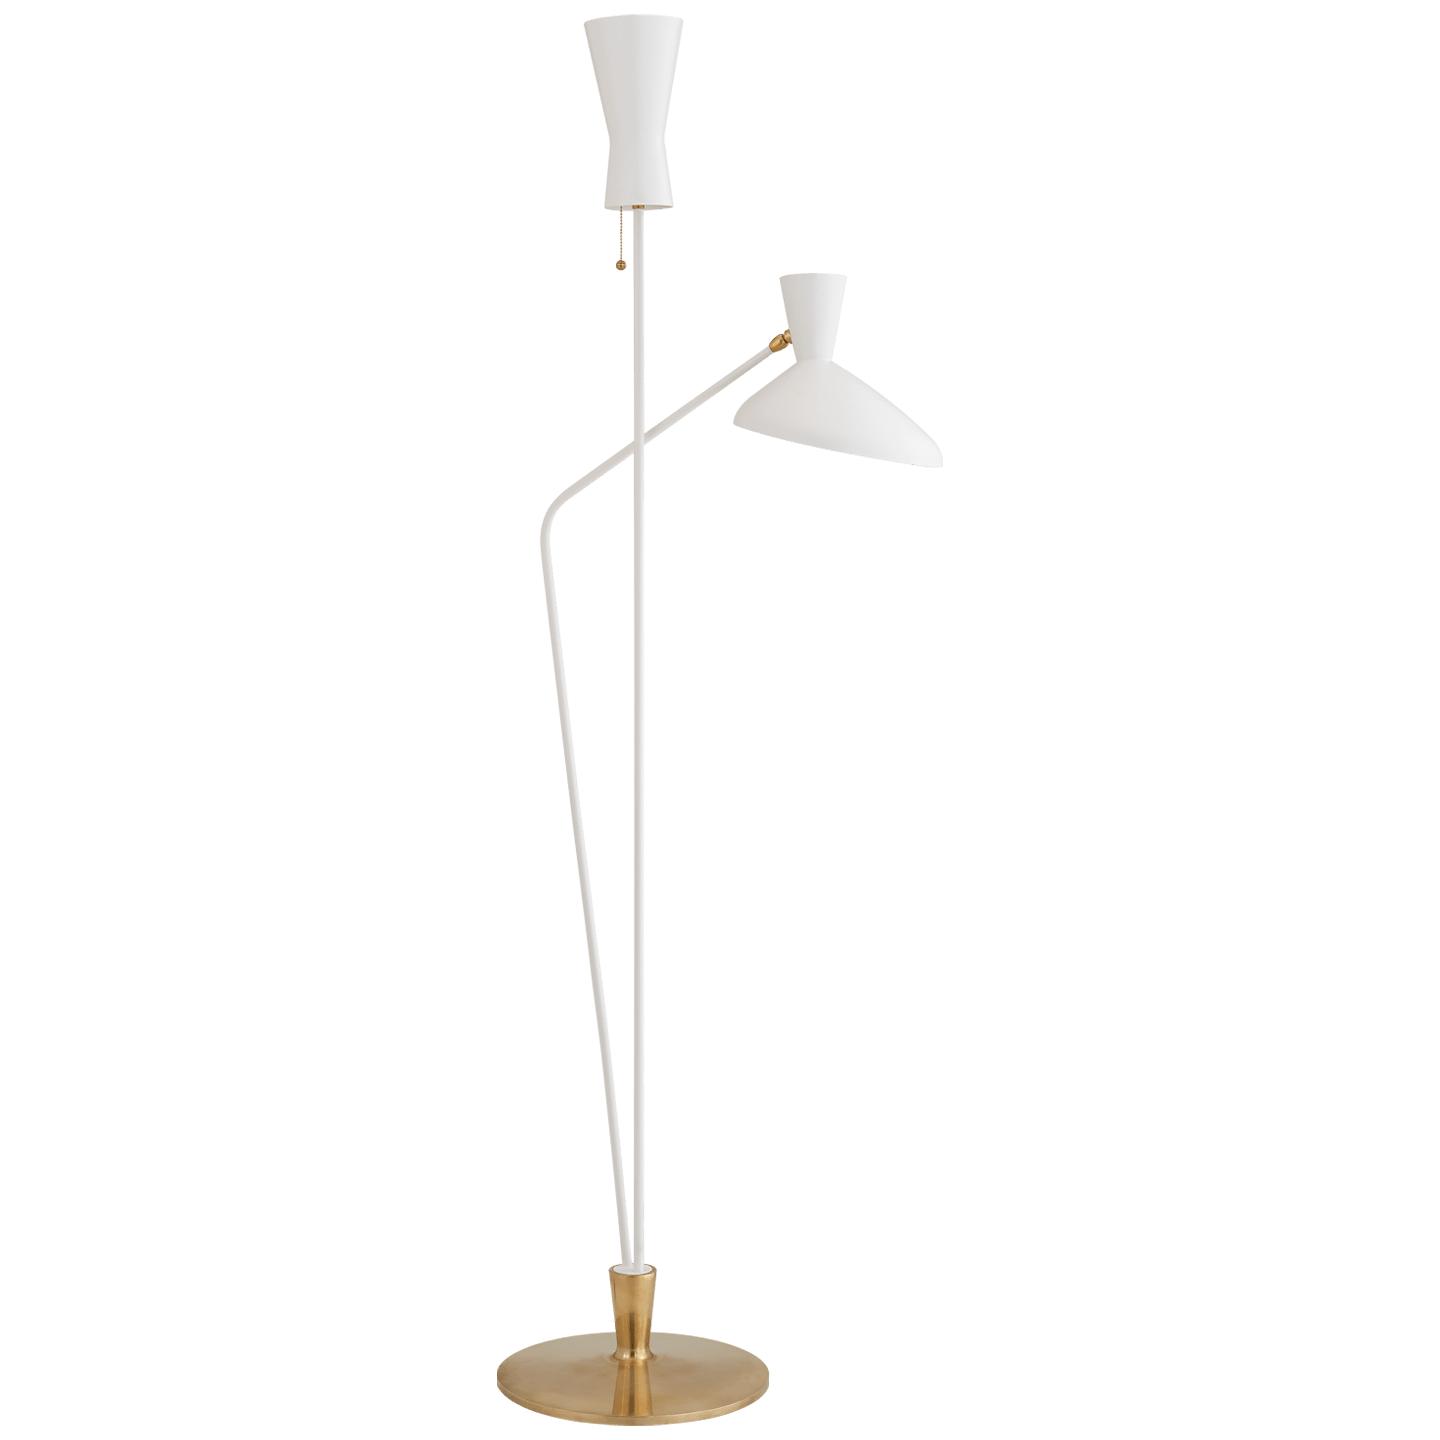 Купить Торшер Austen Large Dual Function Floor Lamp в интернет-магазине roooms.ru